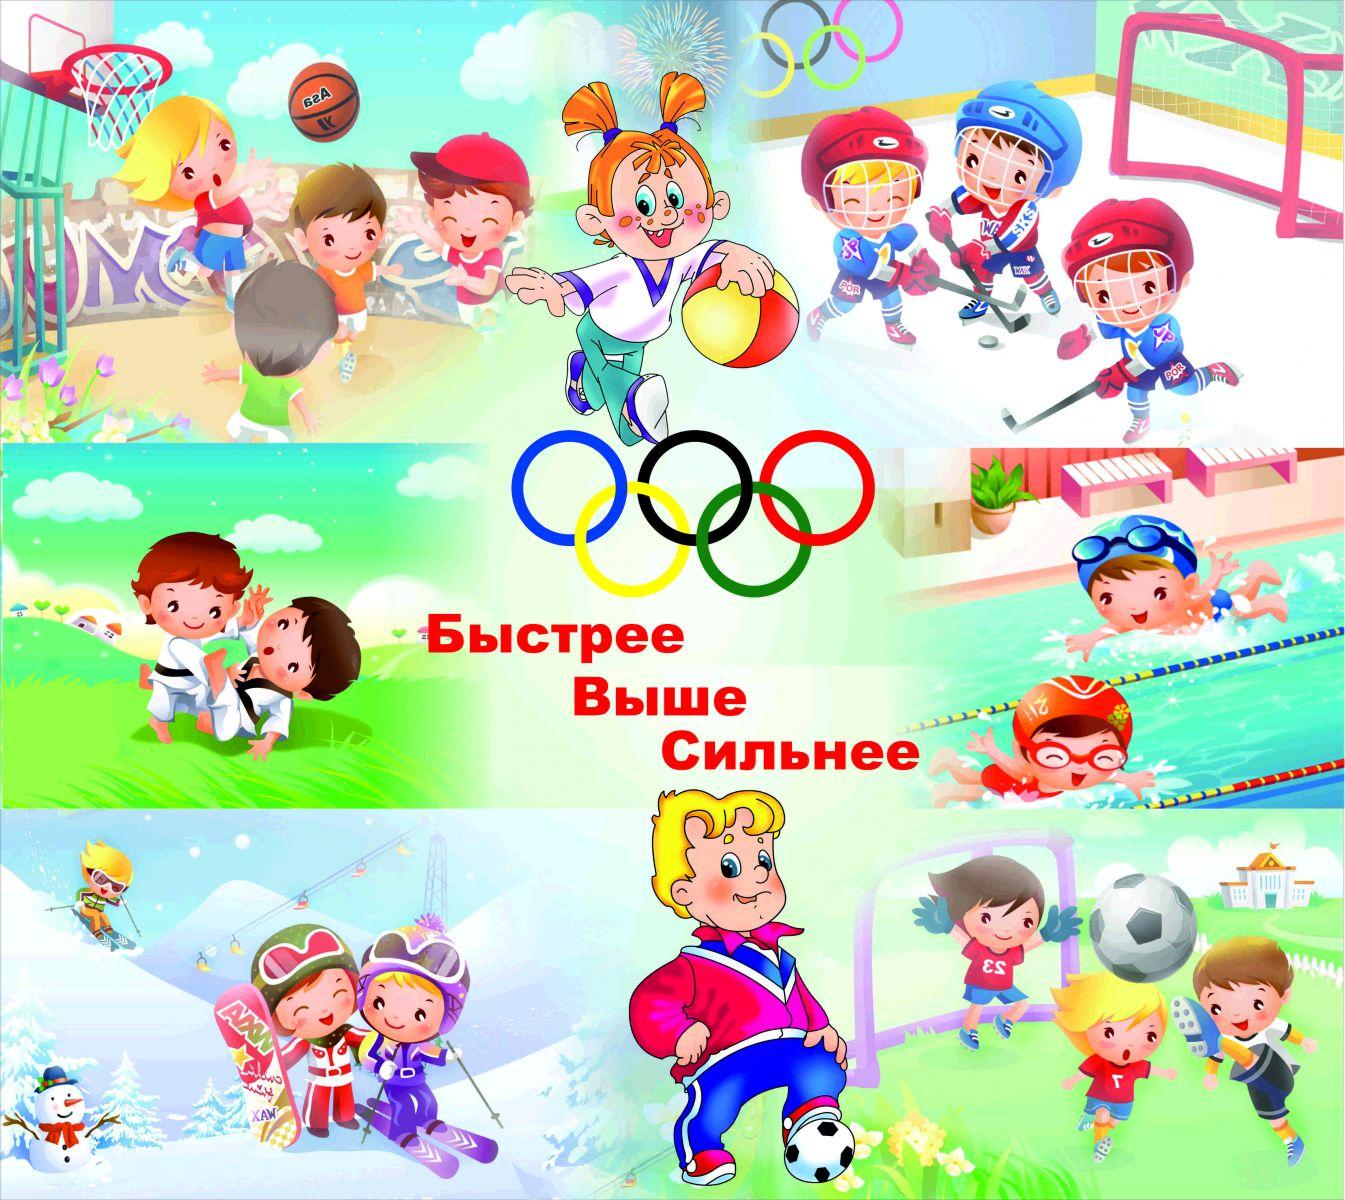 Картинки про спорт для детей школьного возраста